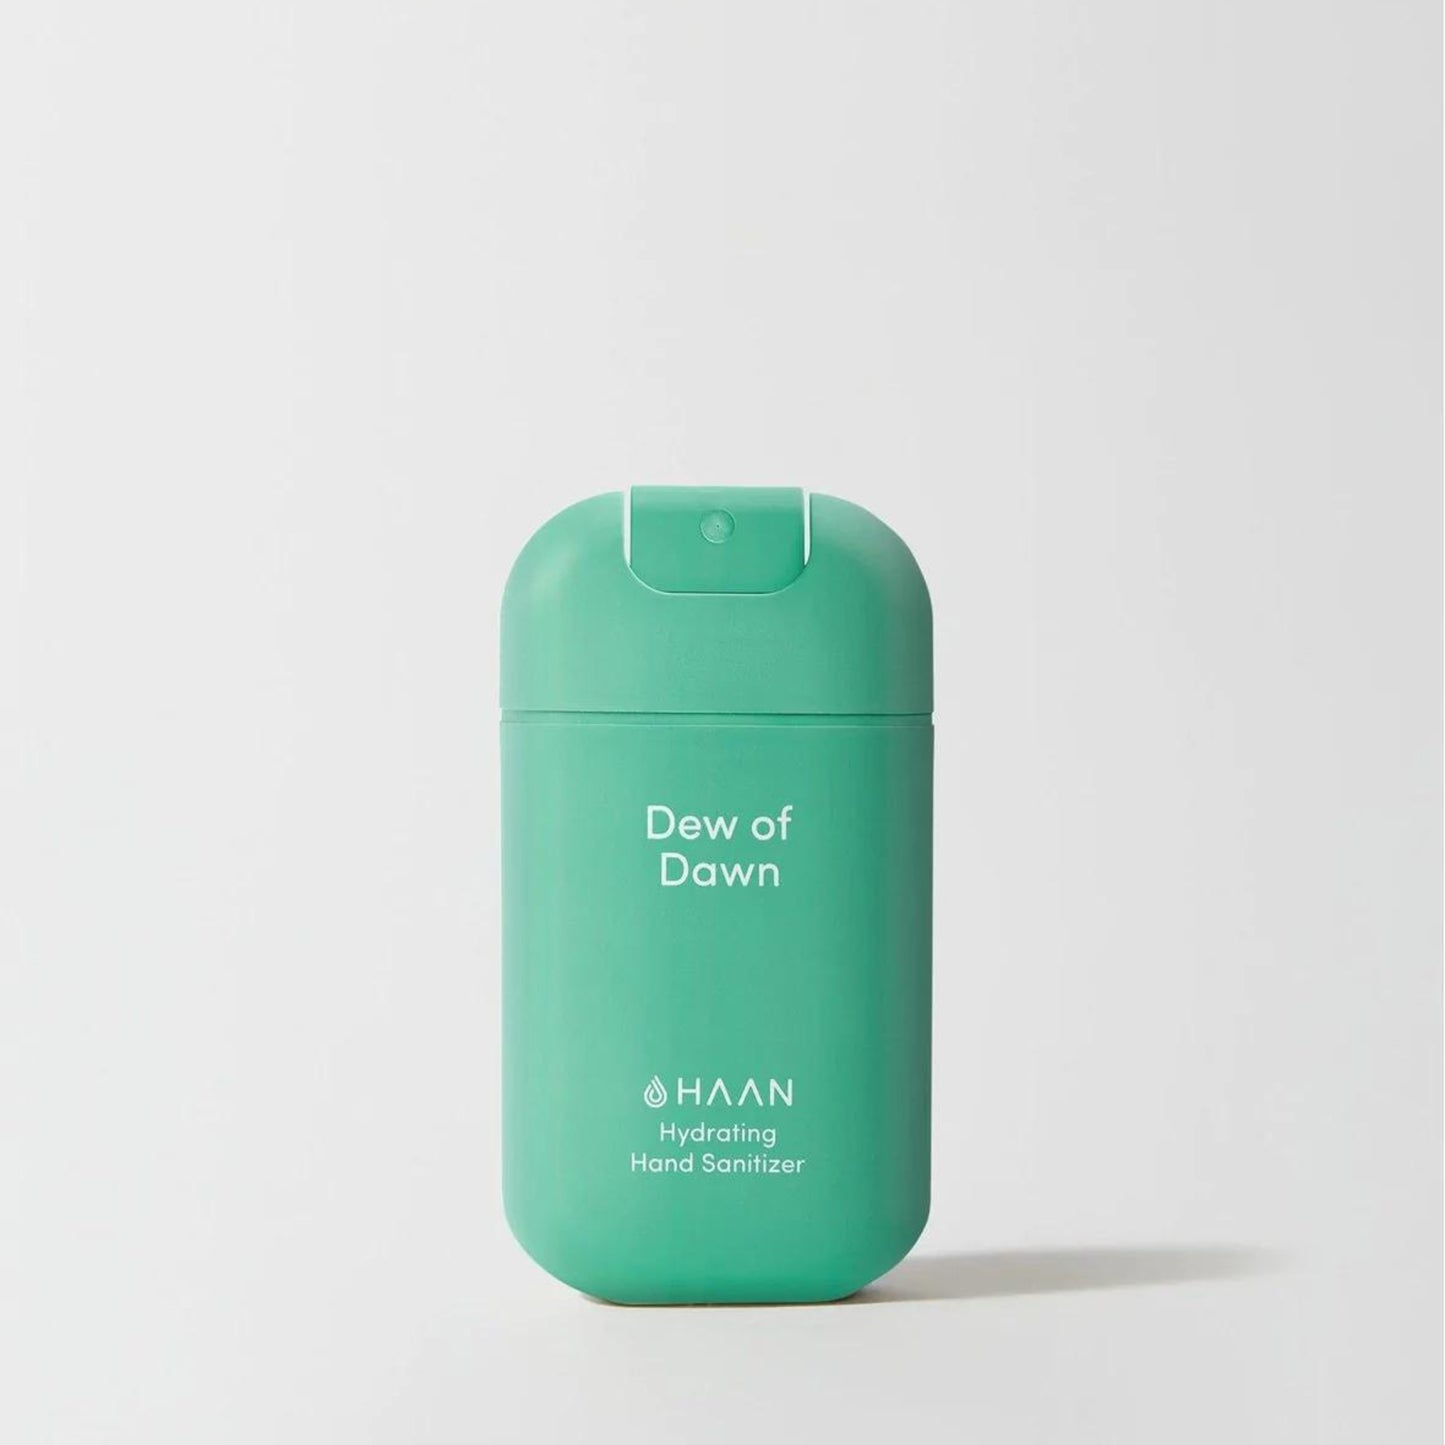 Dew of Dawn Hand Sanitizer by HAAN